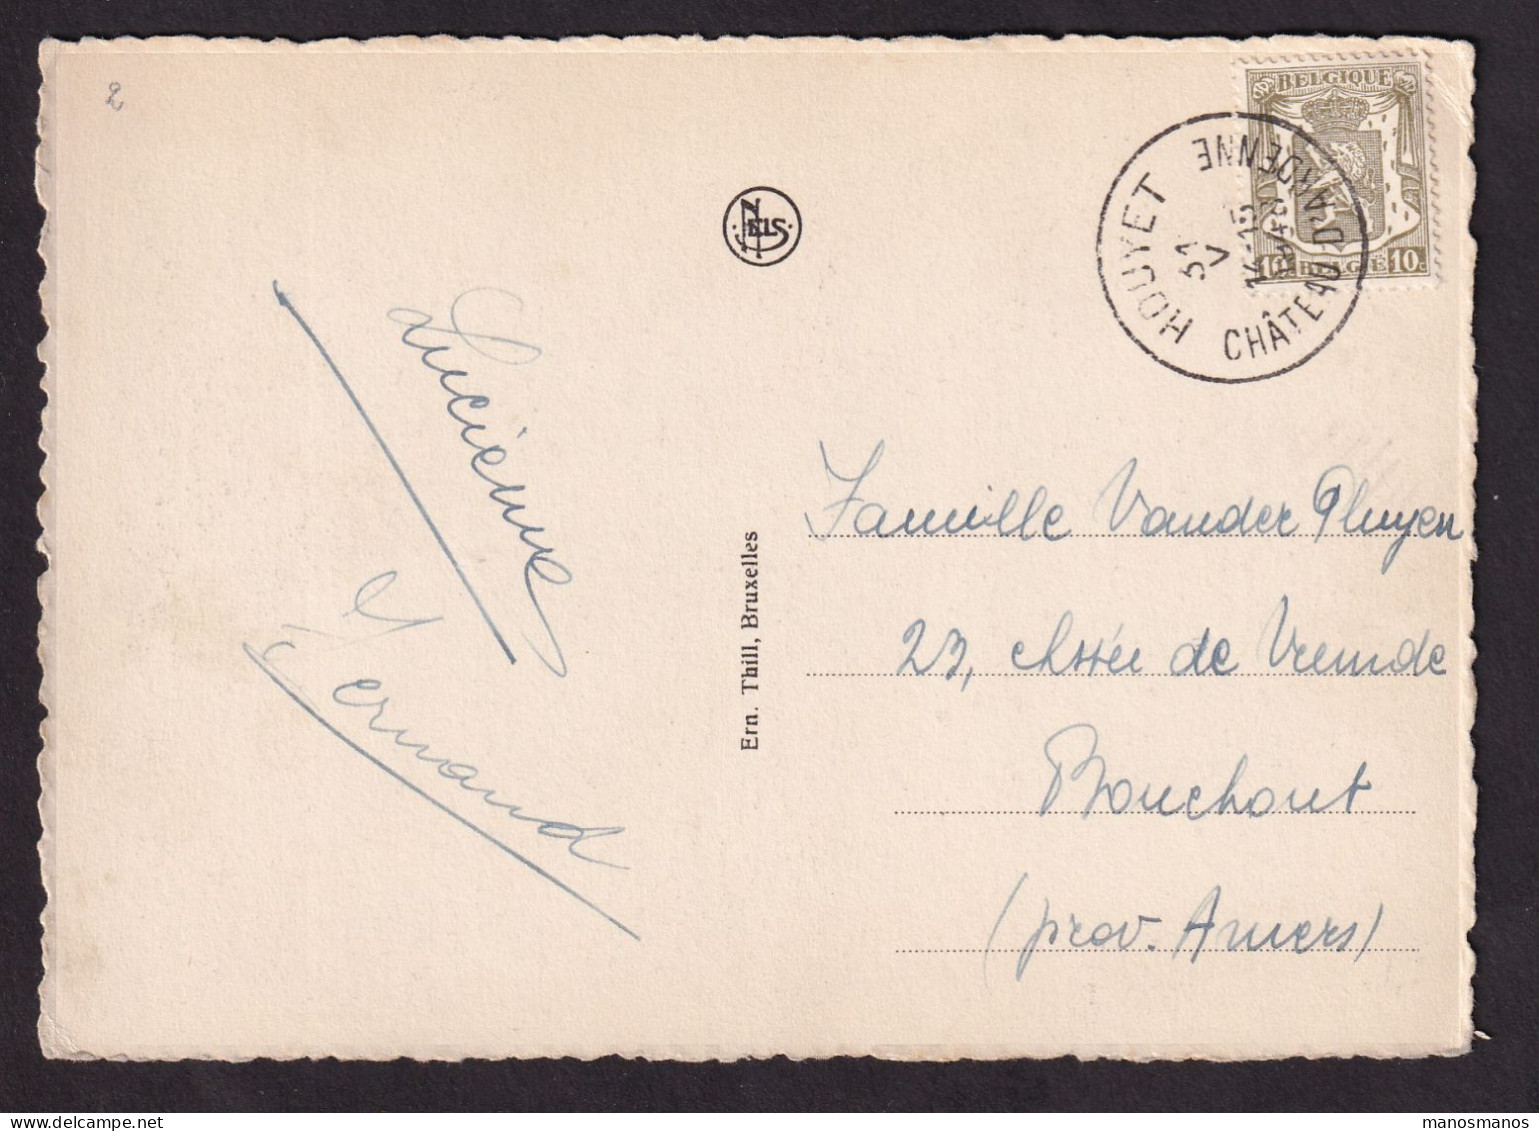 DDFF 895 -- Chateau D Ardenne à HOUYET - Carte-Vue TP Petit Sceau Cachet HOUYET CHATEAU D' ARDENNE 1948 - 1935-1949 Sellos Pequeños Del Estado